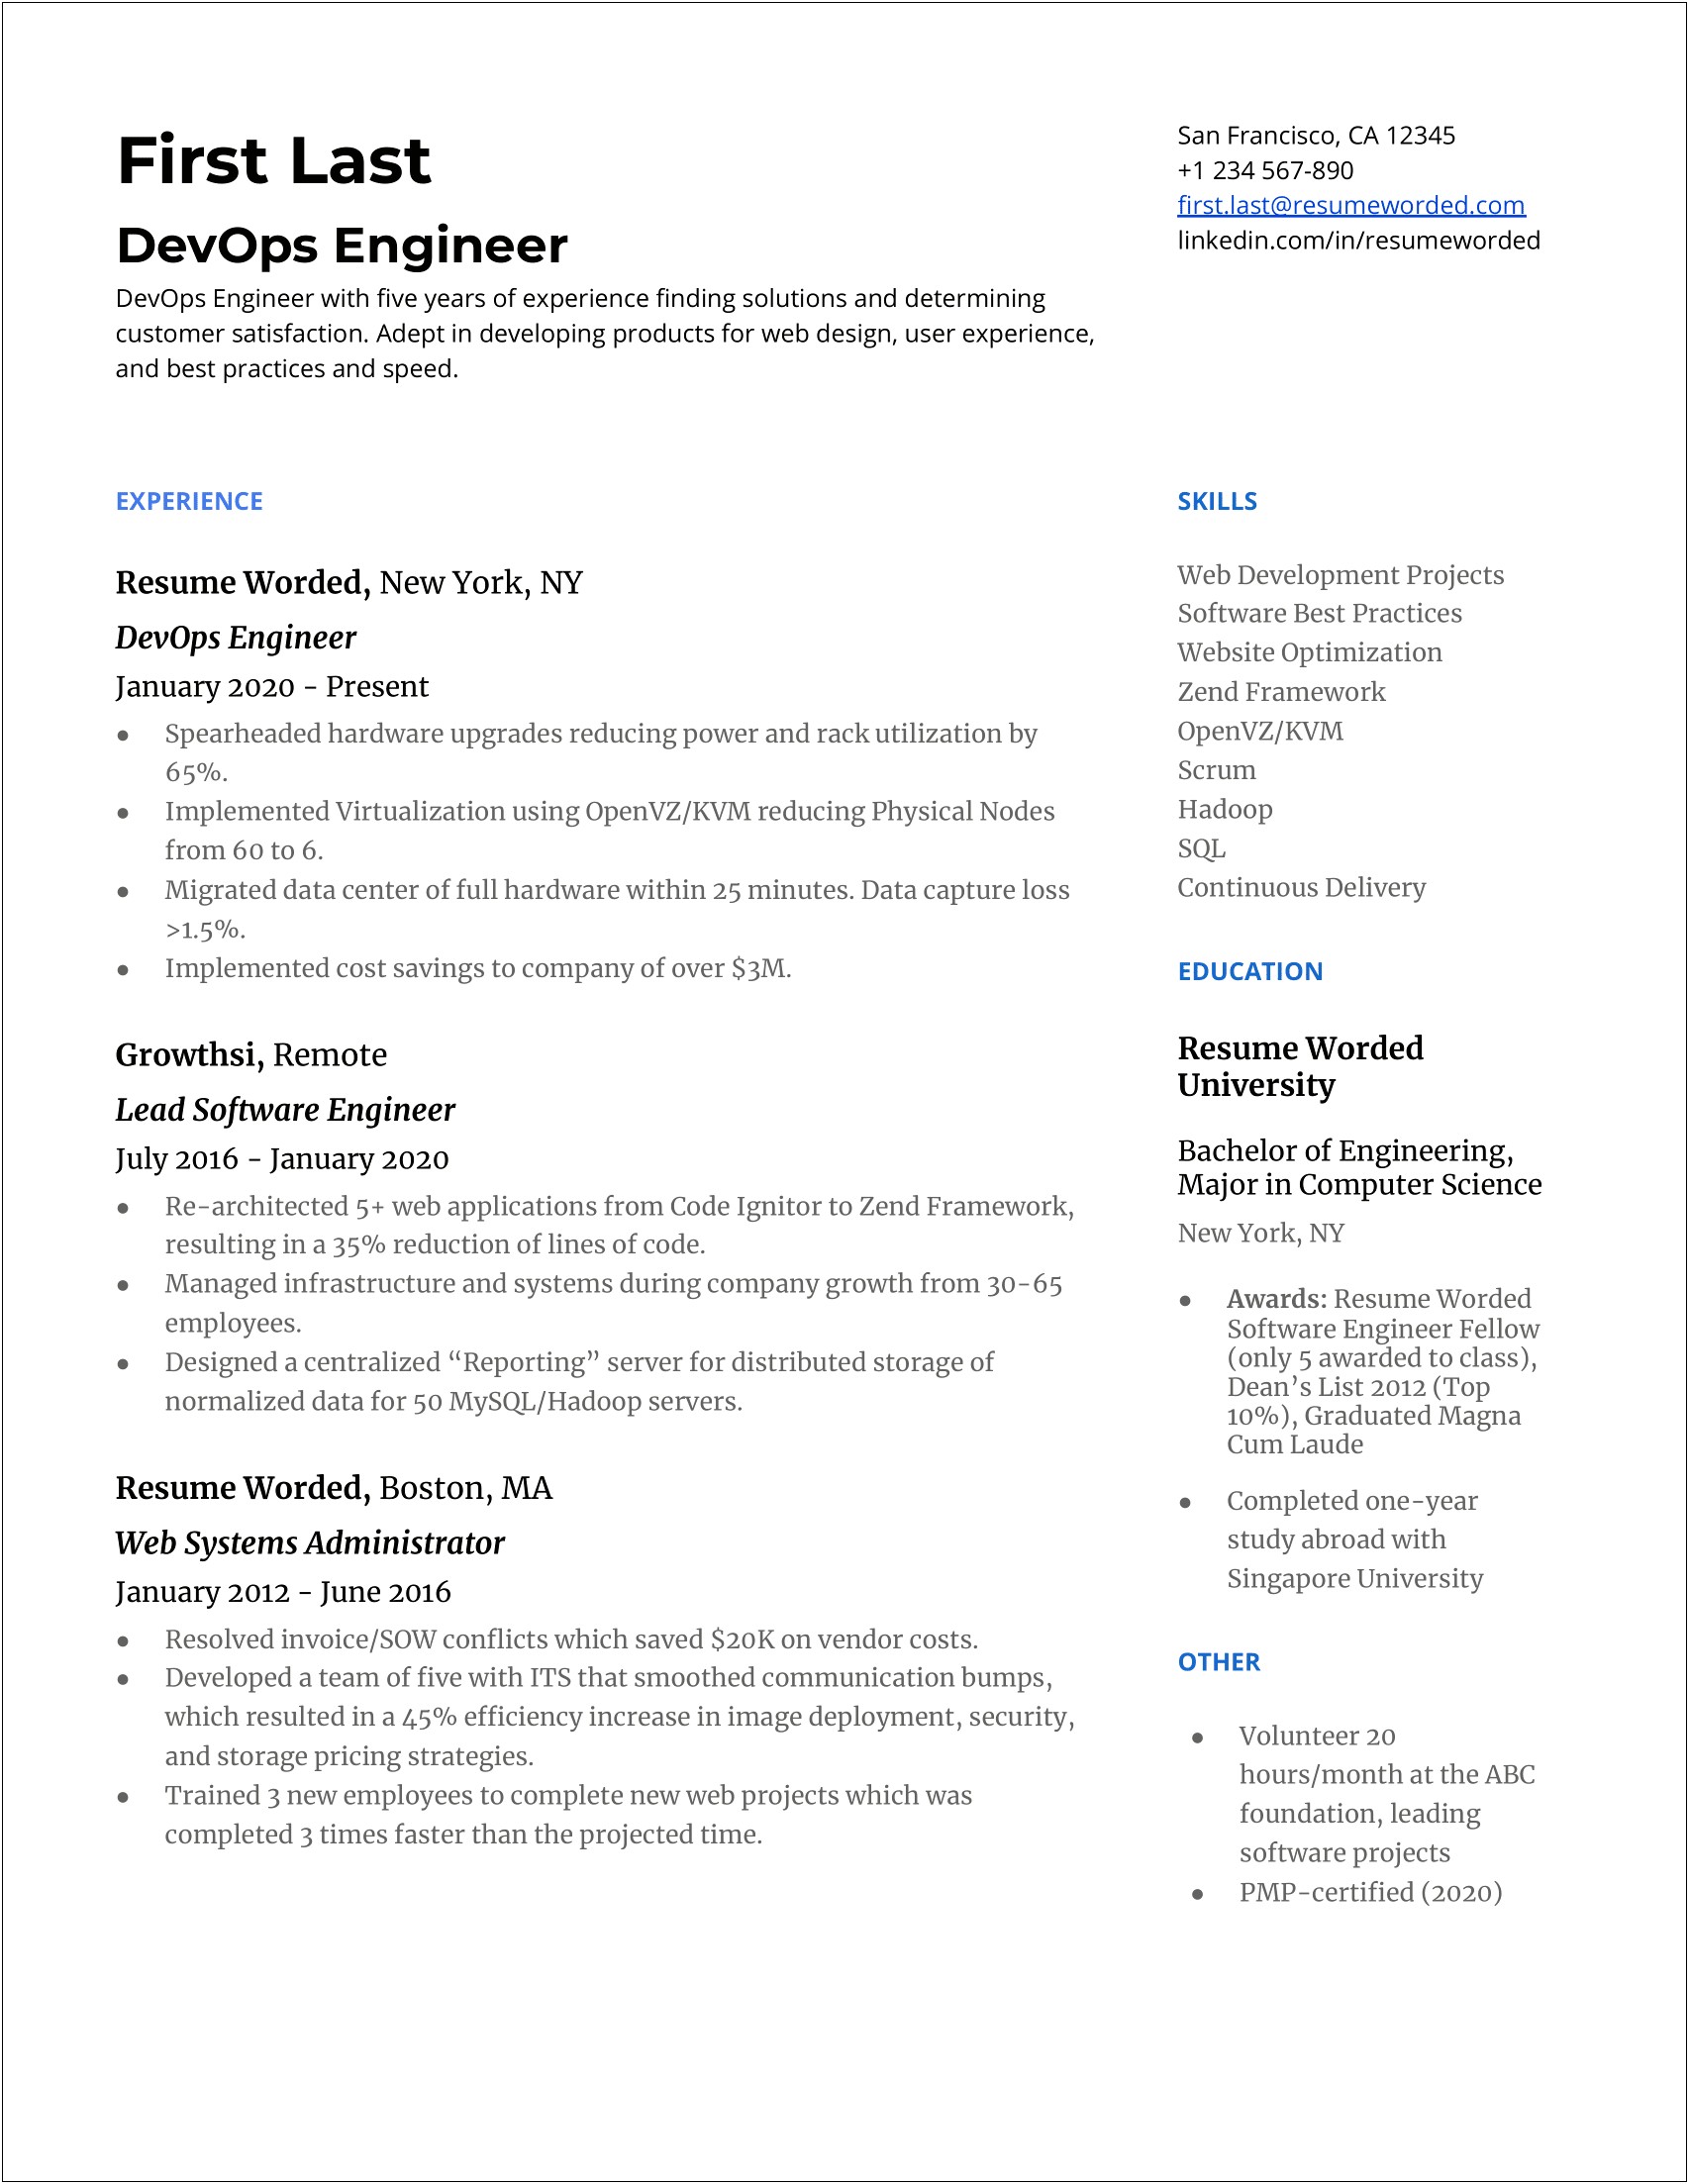 Sample Resume For Fresh Graduate Devops Engineer